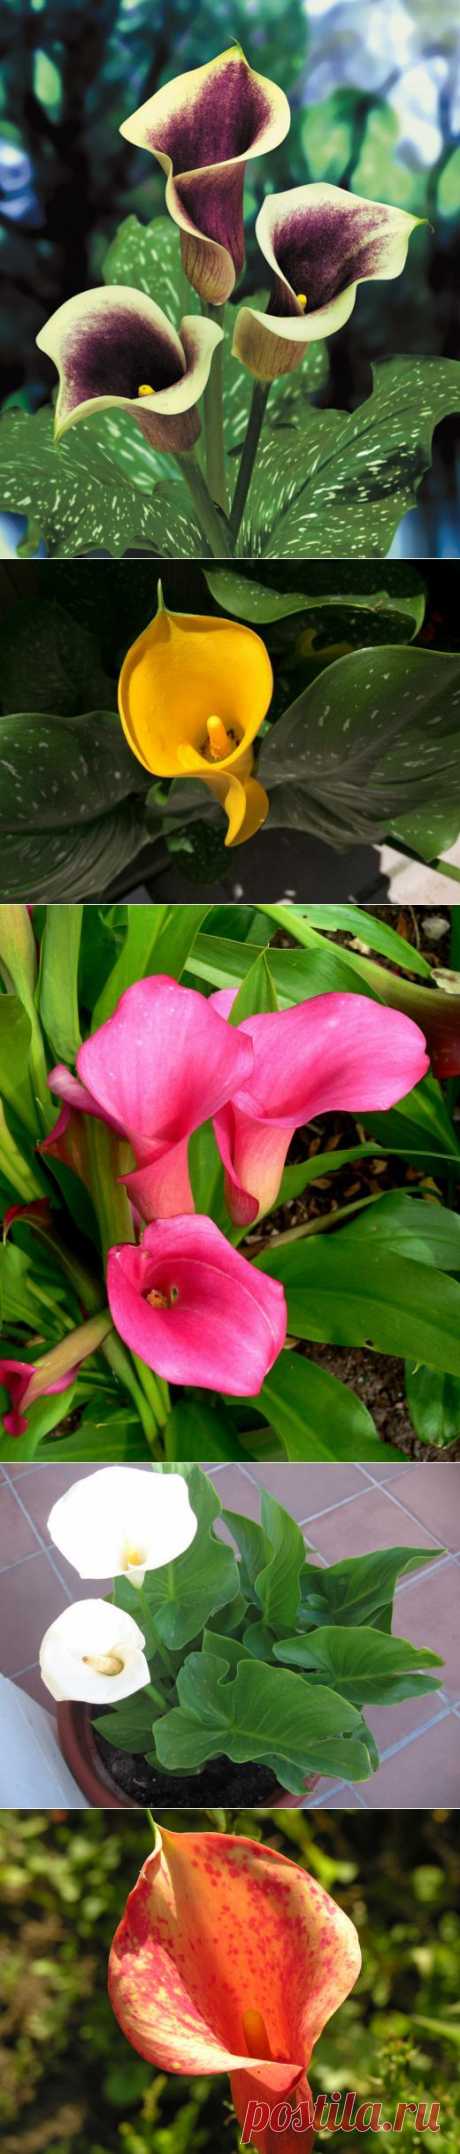 Зантедеския — красивое и интересное растение